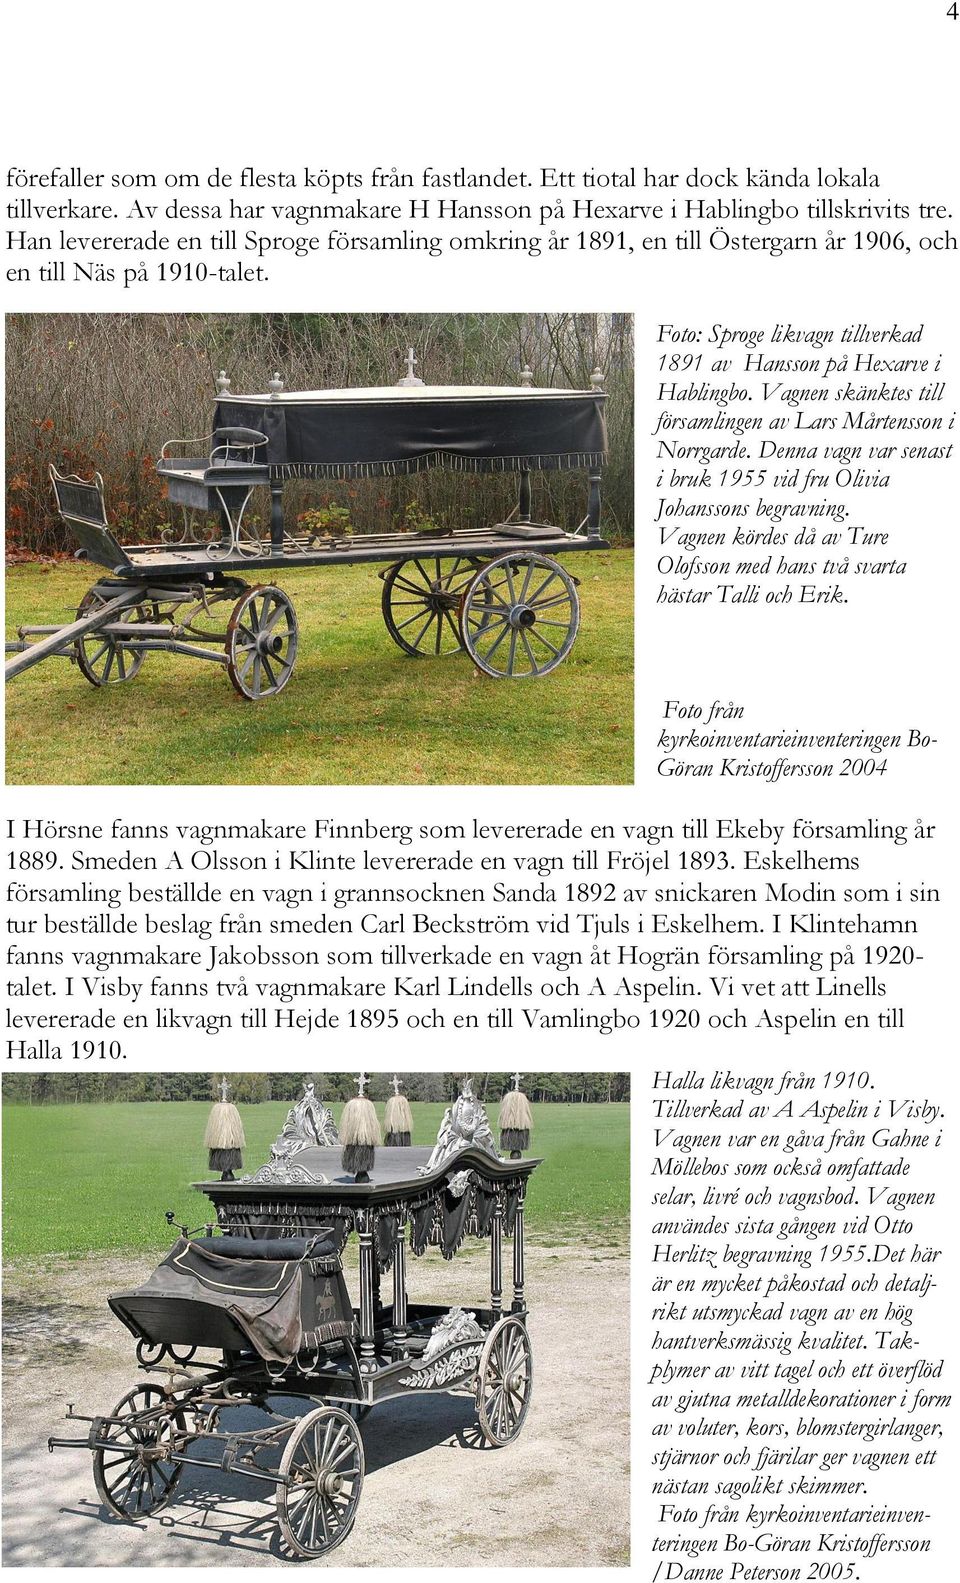 Vagnen skänktes till församlingen av Lars Mårtensson i Norrgarde. Denna vagn var senast i bruk 1955 vid fru Olivia Johanssons begravning.